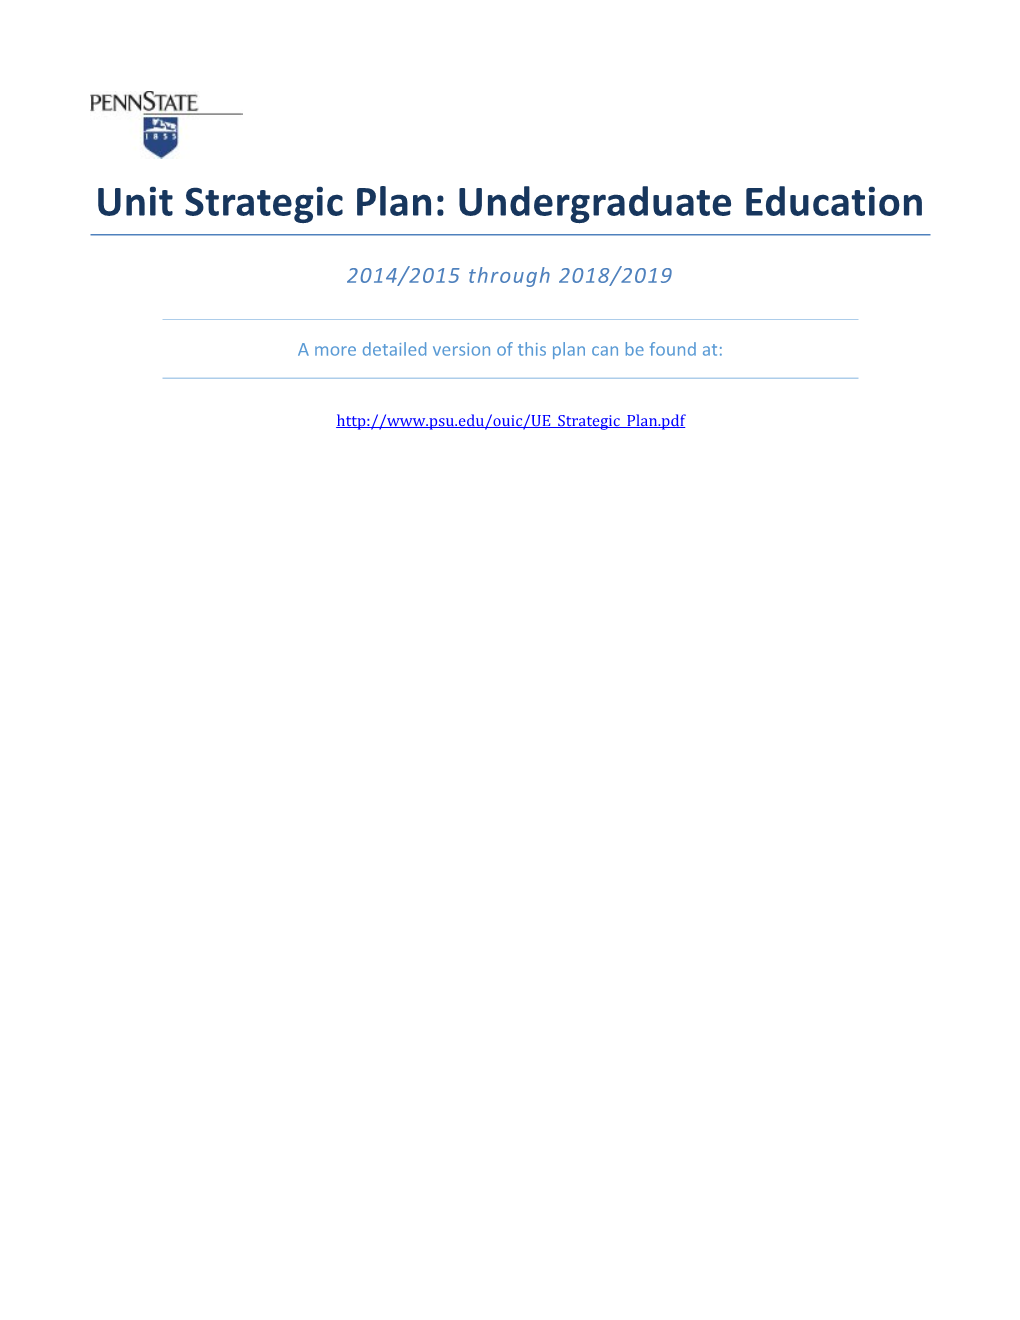 Unit Strategic Plan: Undergraduate Education 2014/2015 Through 2018/2019